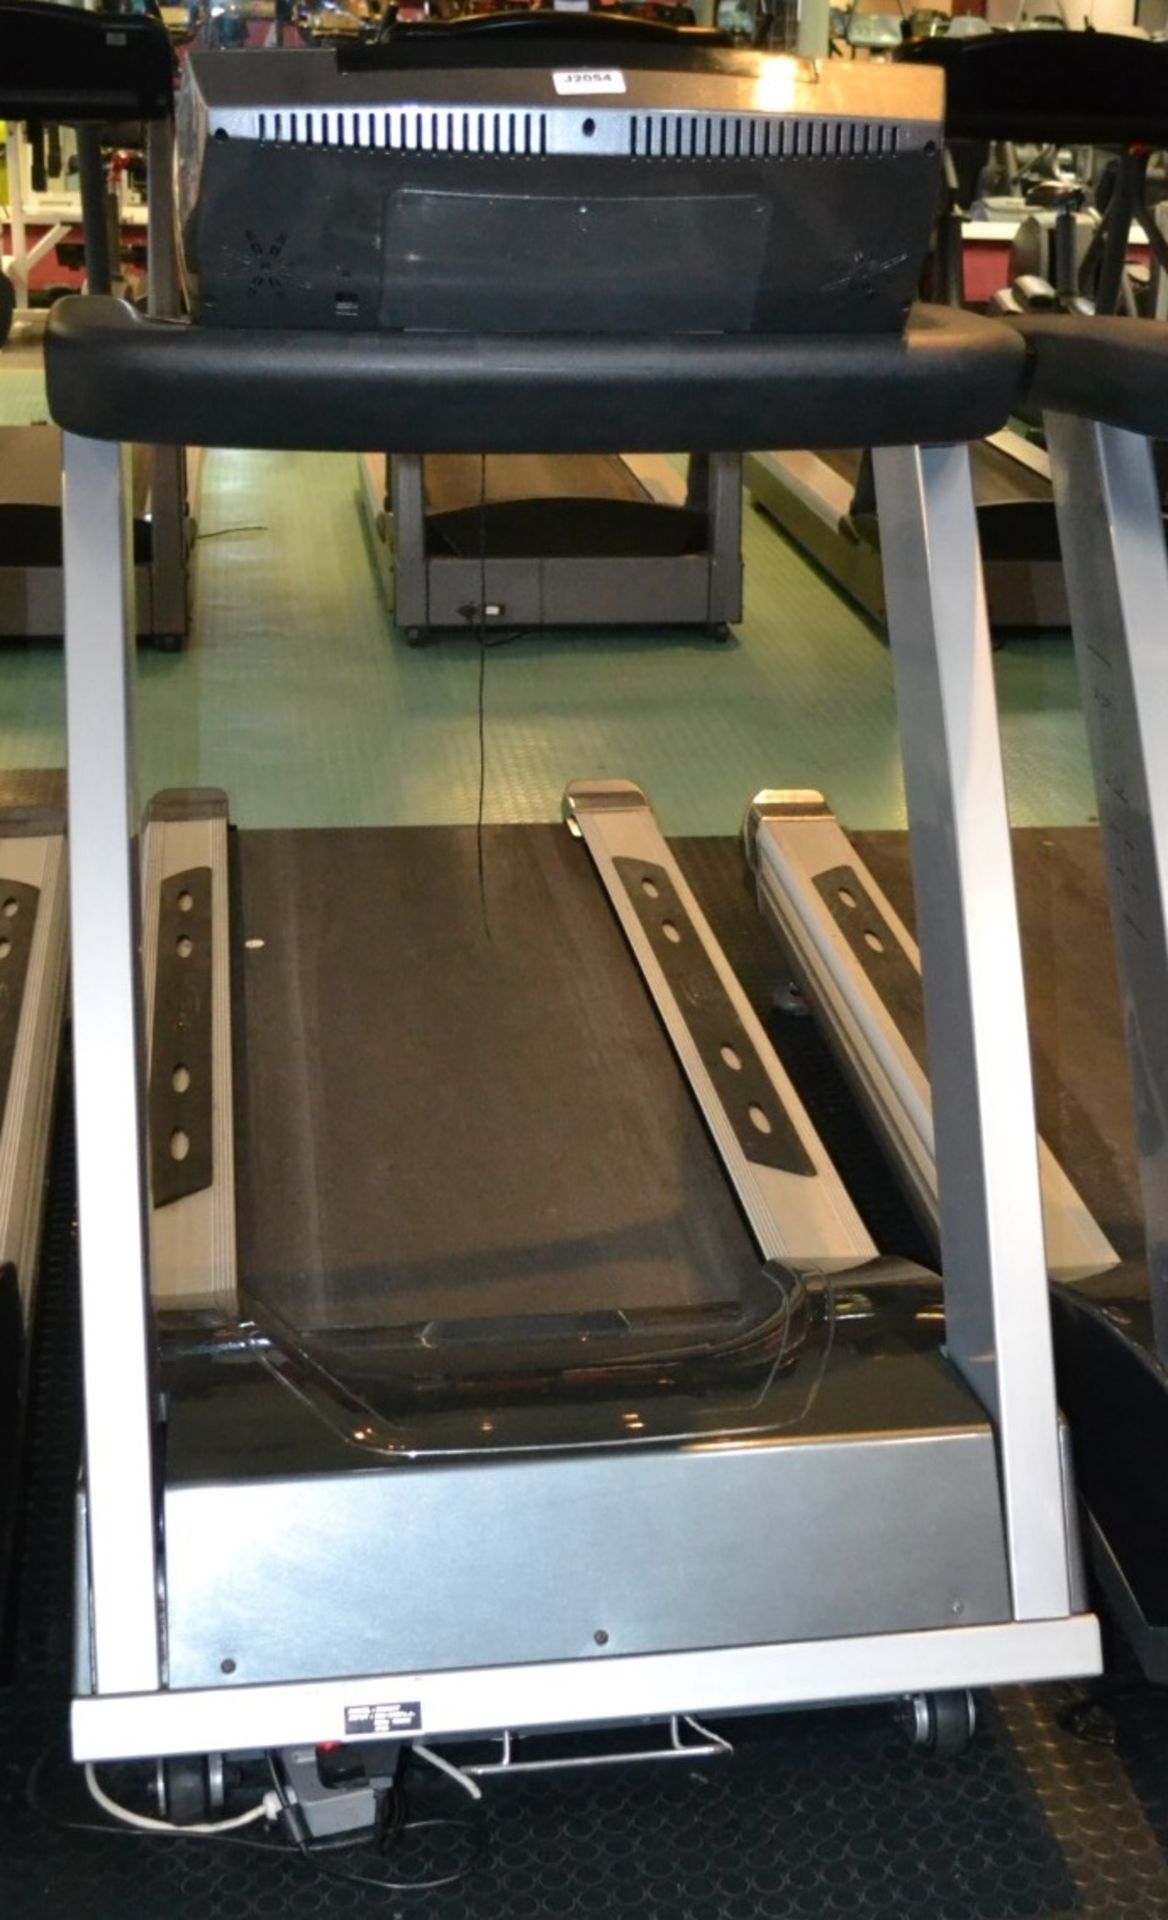 1 x BH Fitness Treadmill Model BH 300T - Dimensions: L230 x H150 x W82cm - Ref: J2054/1FG - - Image 2 of 3